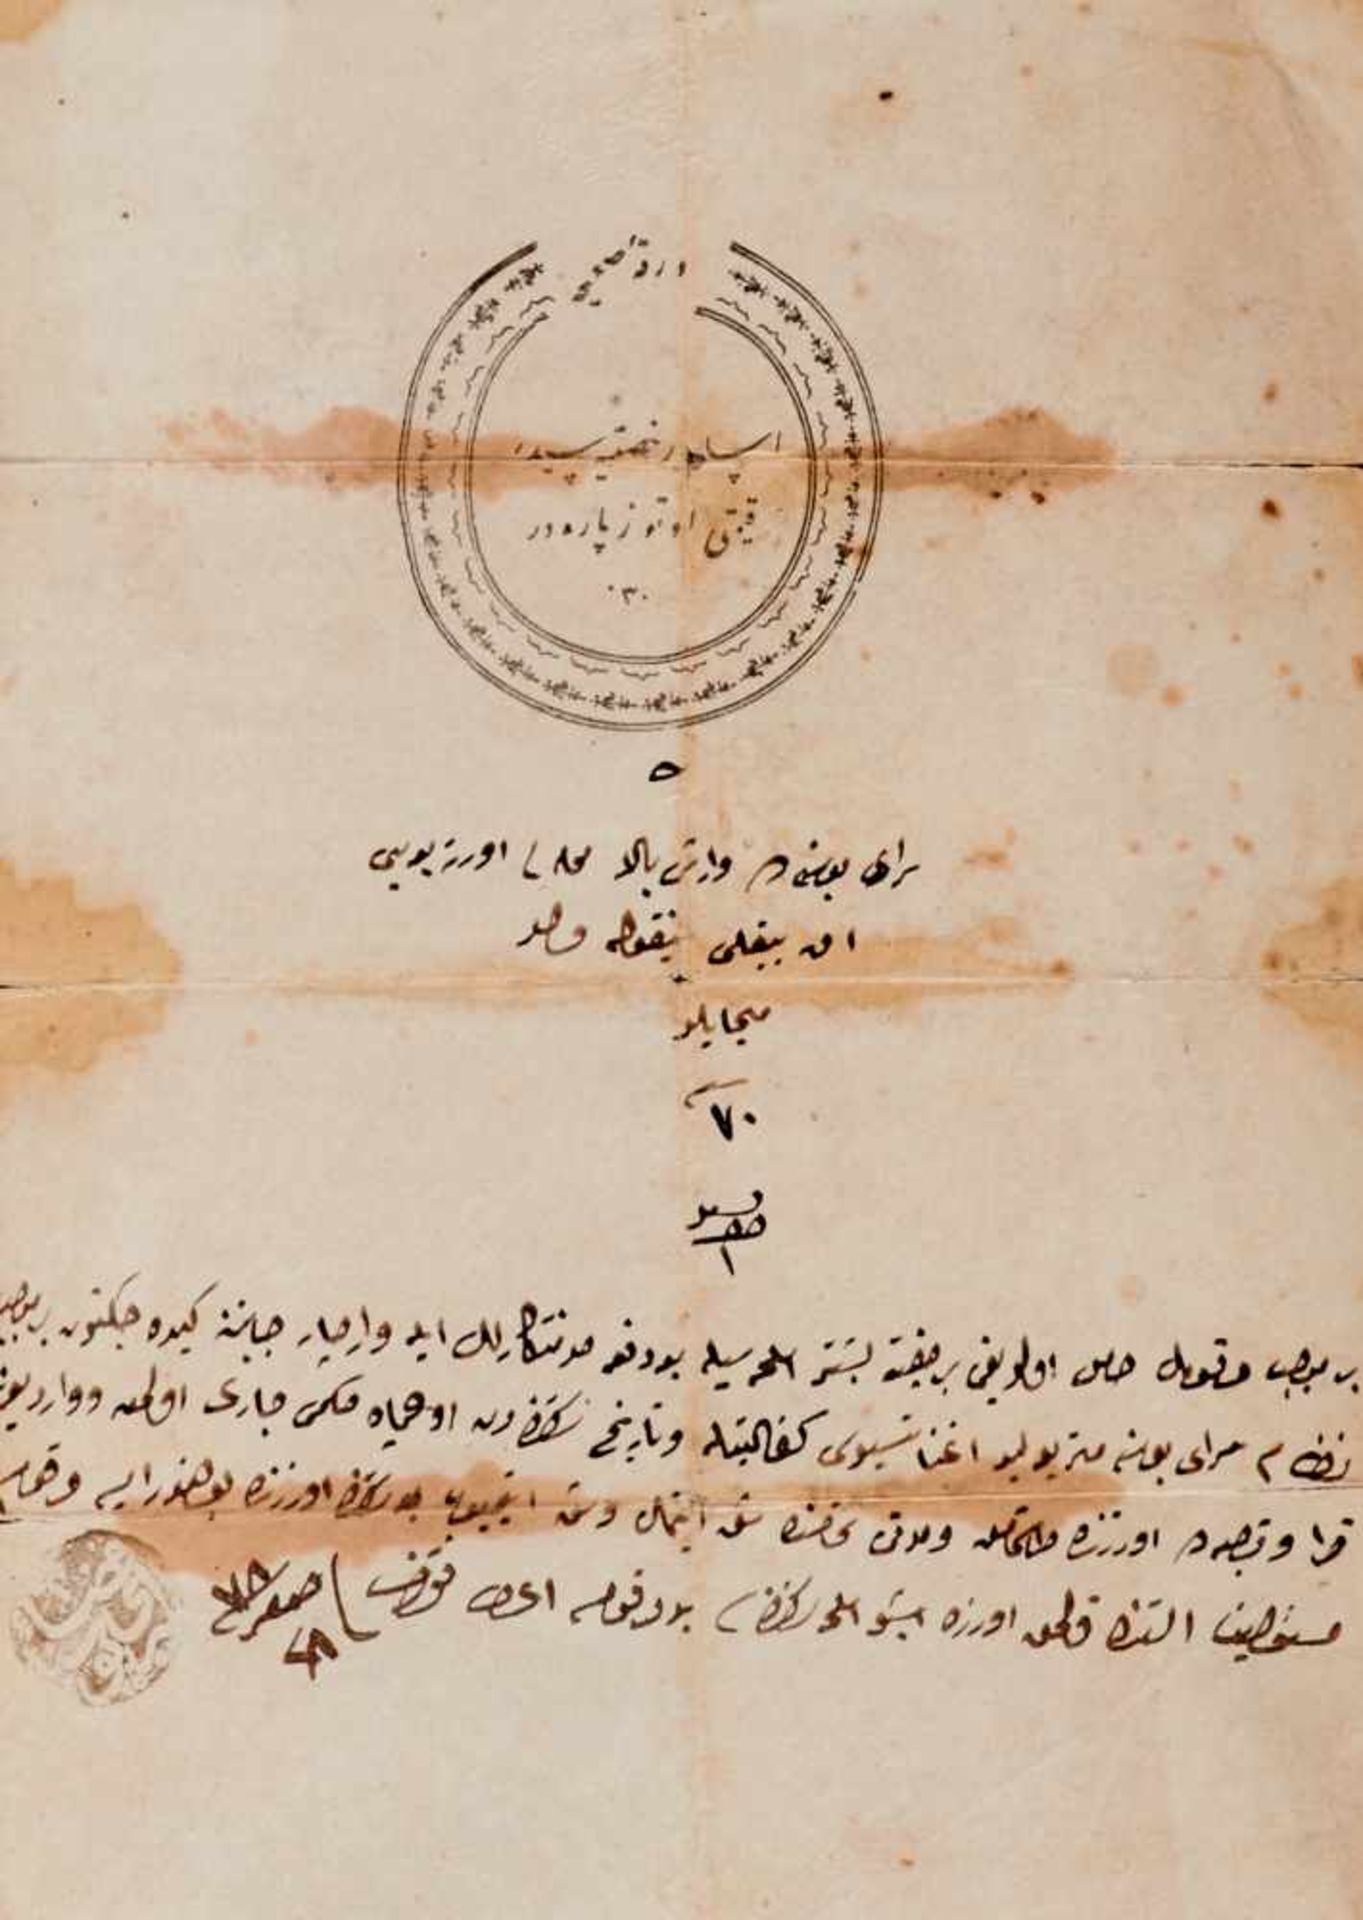 Osmanisches Reich Sammlung - Ca. 70 türkische Dokumente und Briefe, meistgedruckte Formulare hs. - Bild 3 aus 7